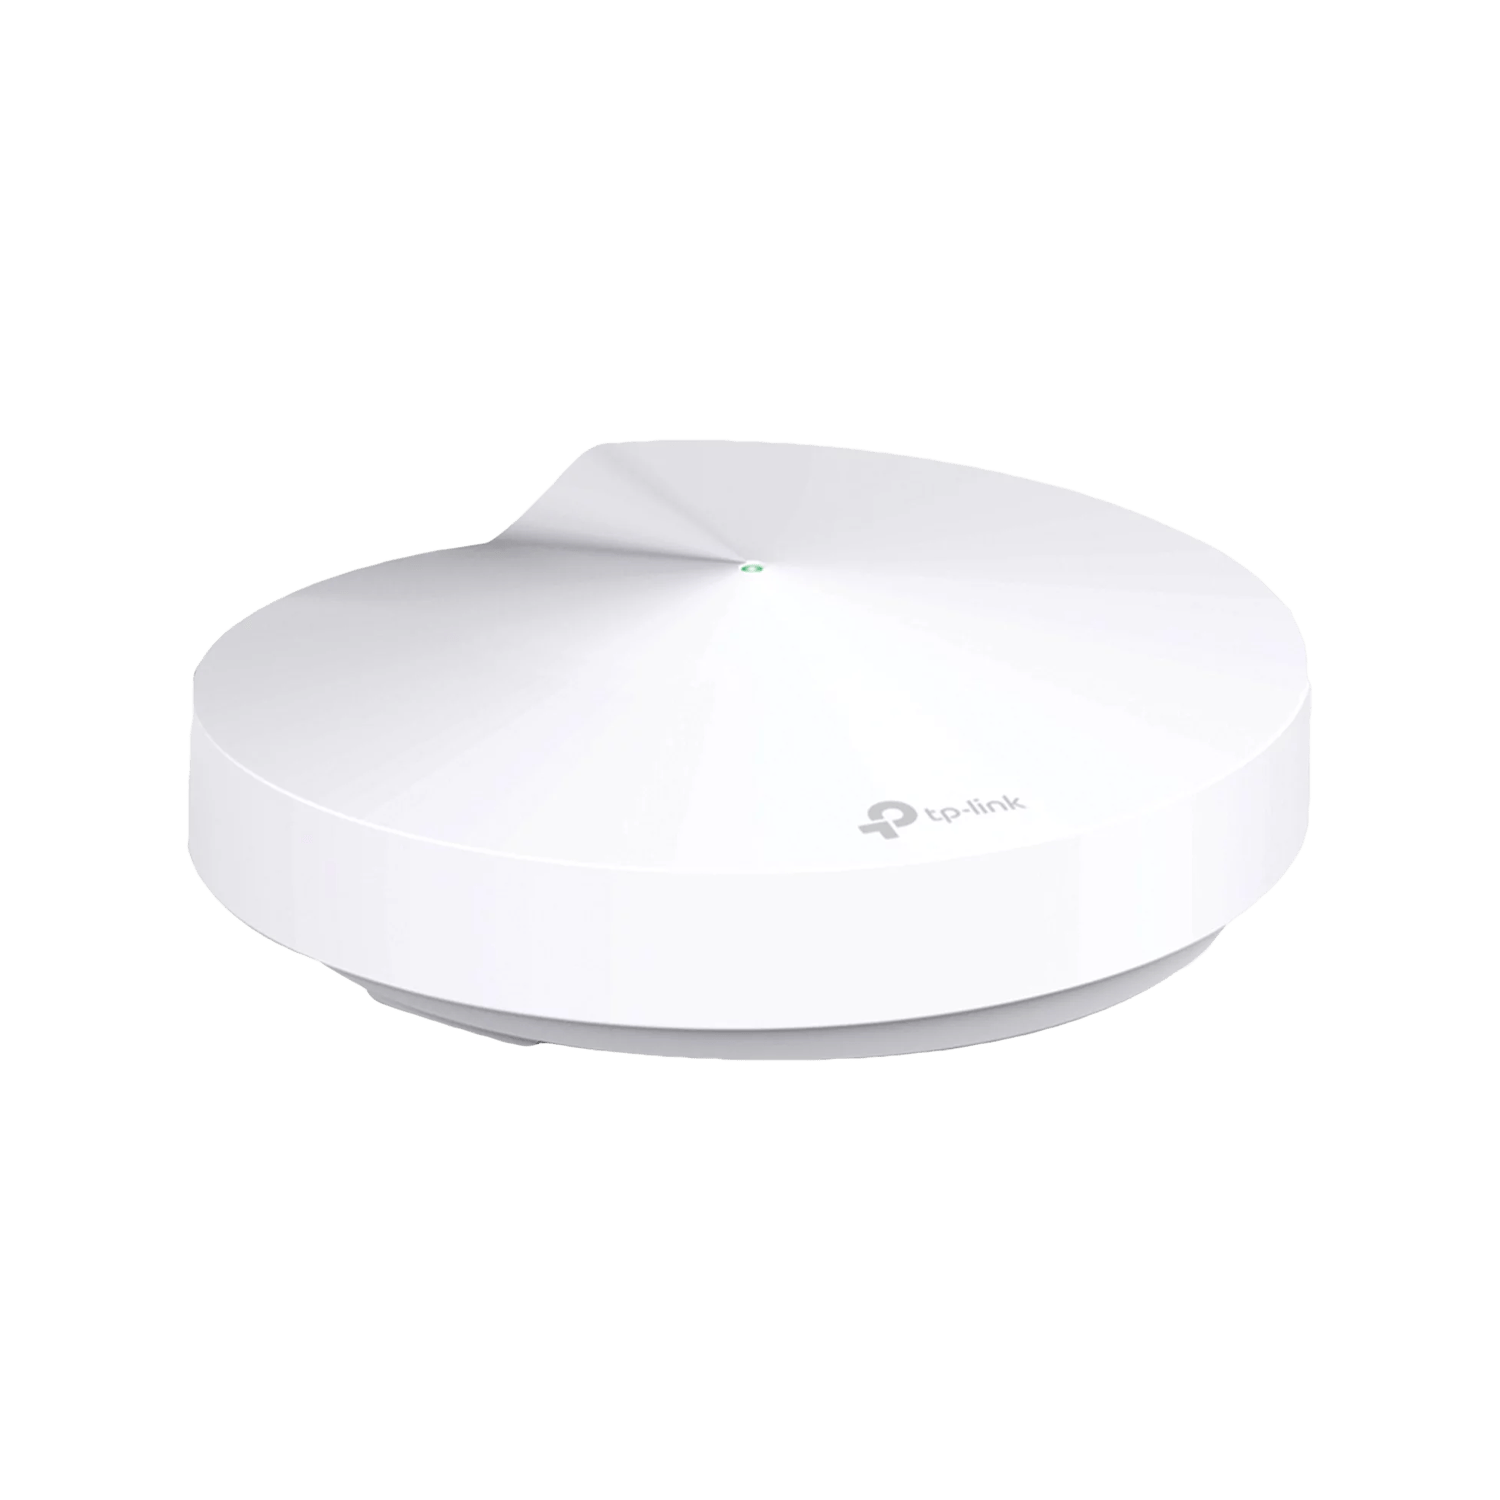  ראוטר אלחוטי TP-Link Deco M5 Whole Home Mesh Wi-Fi System - צבע לבן שלוש שנות אחריות ע